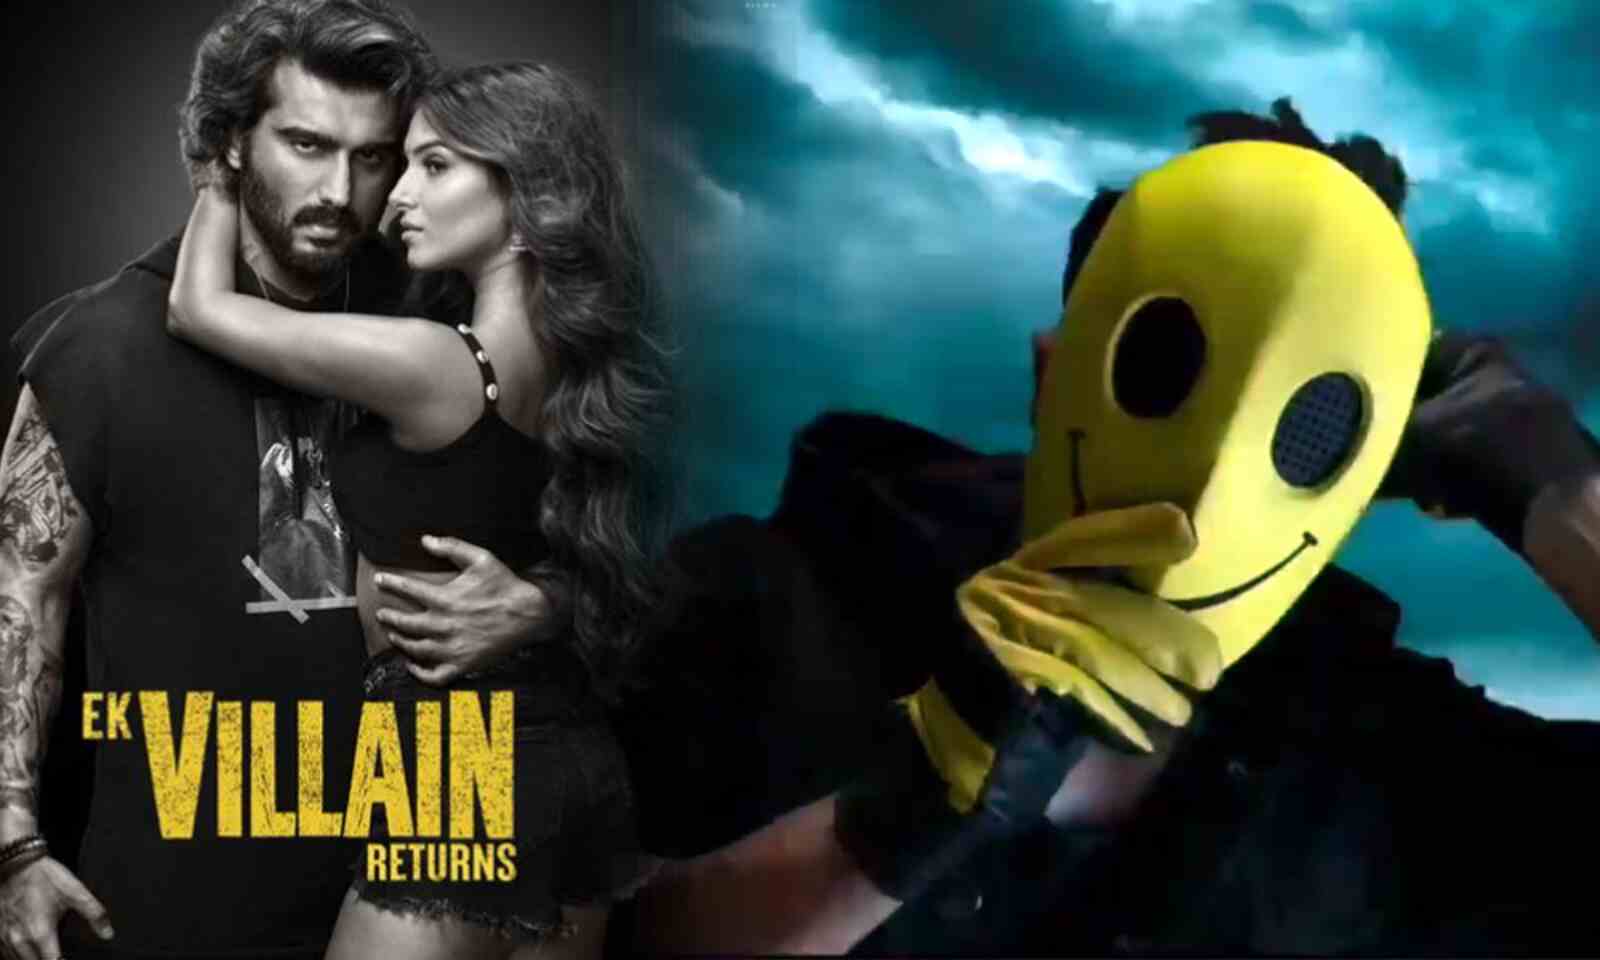 Ek Villain Returns Trailer: Who Is The Villain Of This Tale, John Abraham  Or Arjun Kapoor?